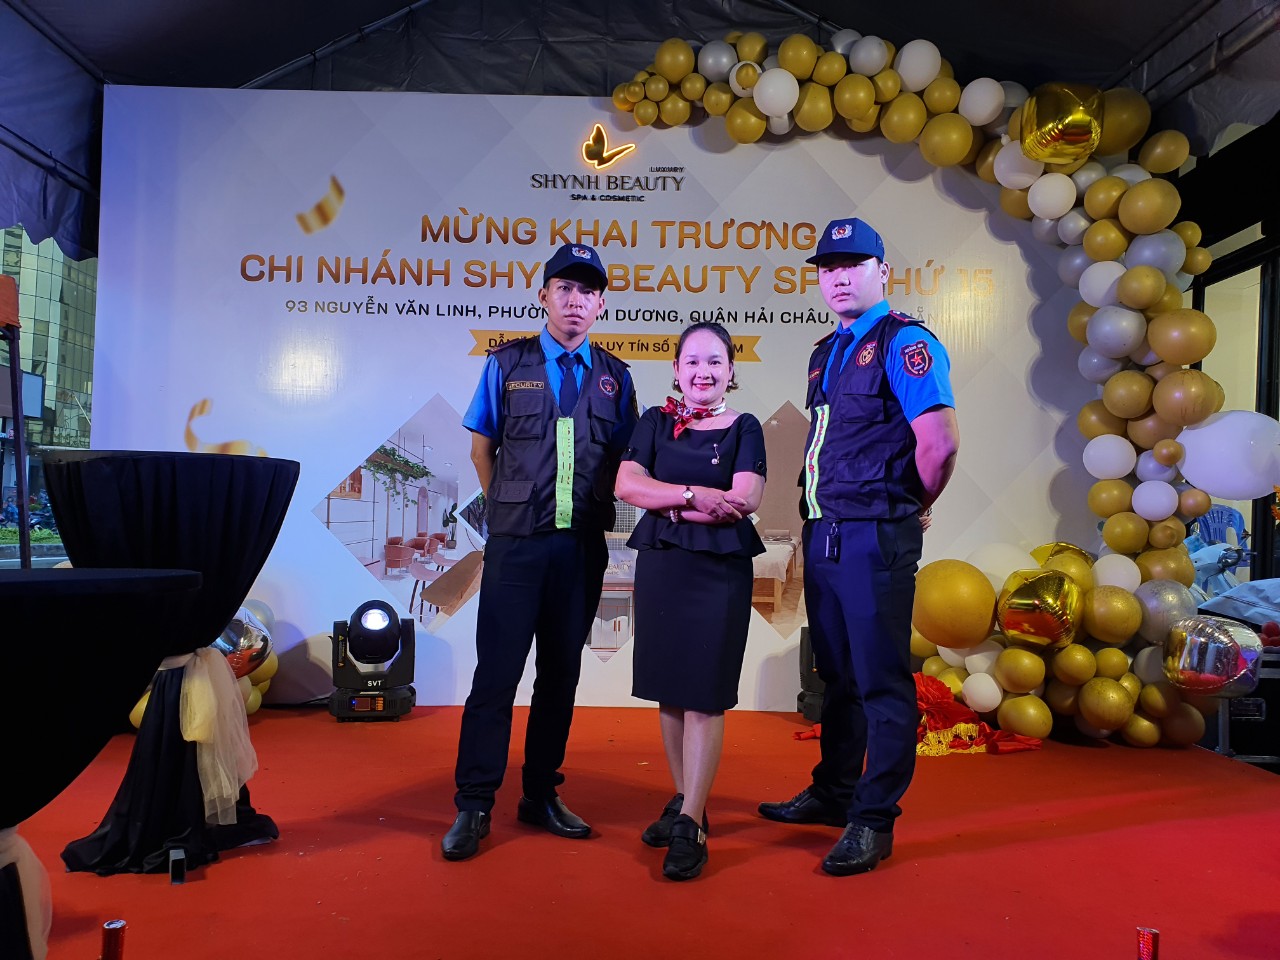 Những điều kiện tiên quyết để trở thành một nhân viên bảo vệ sự kiện chuyên nghiệp tại Đà Nẵng